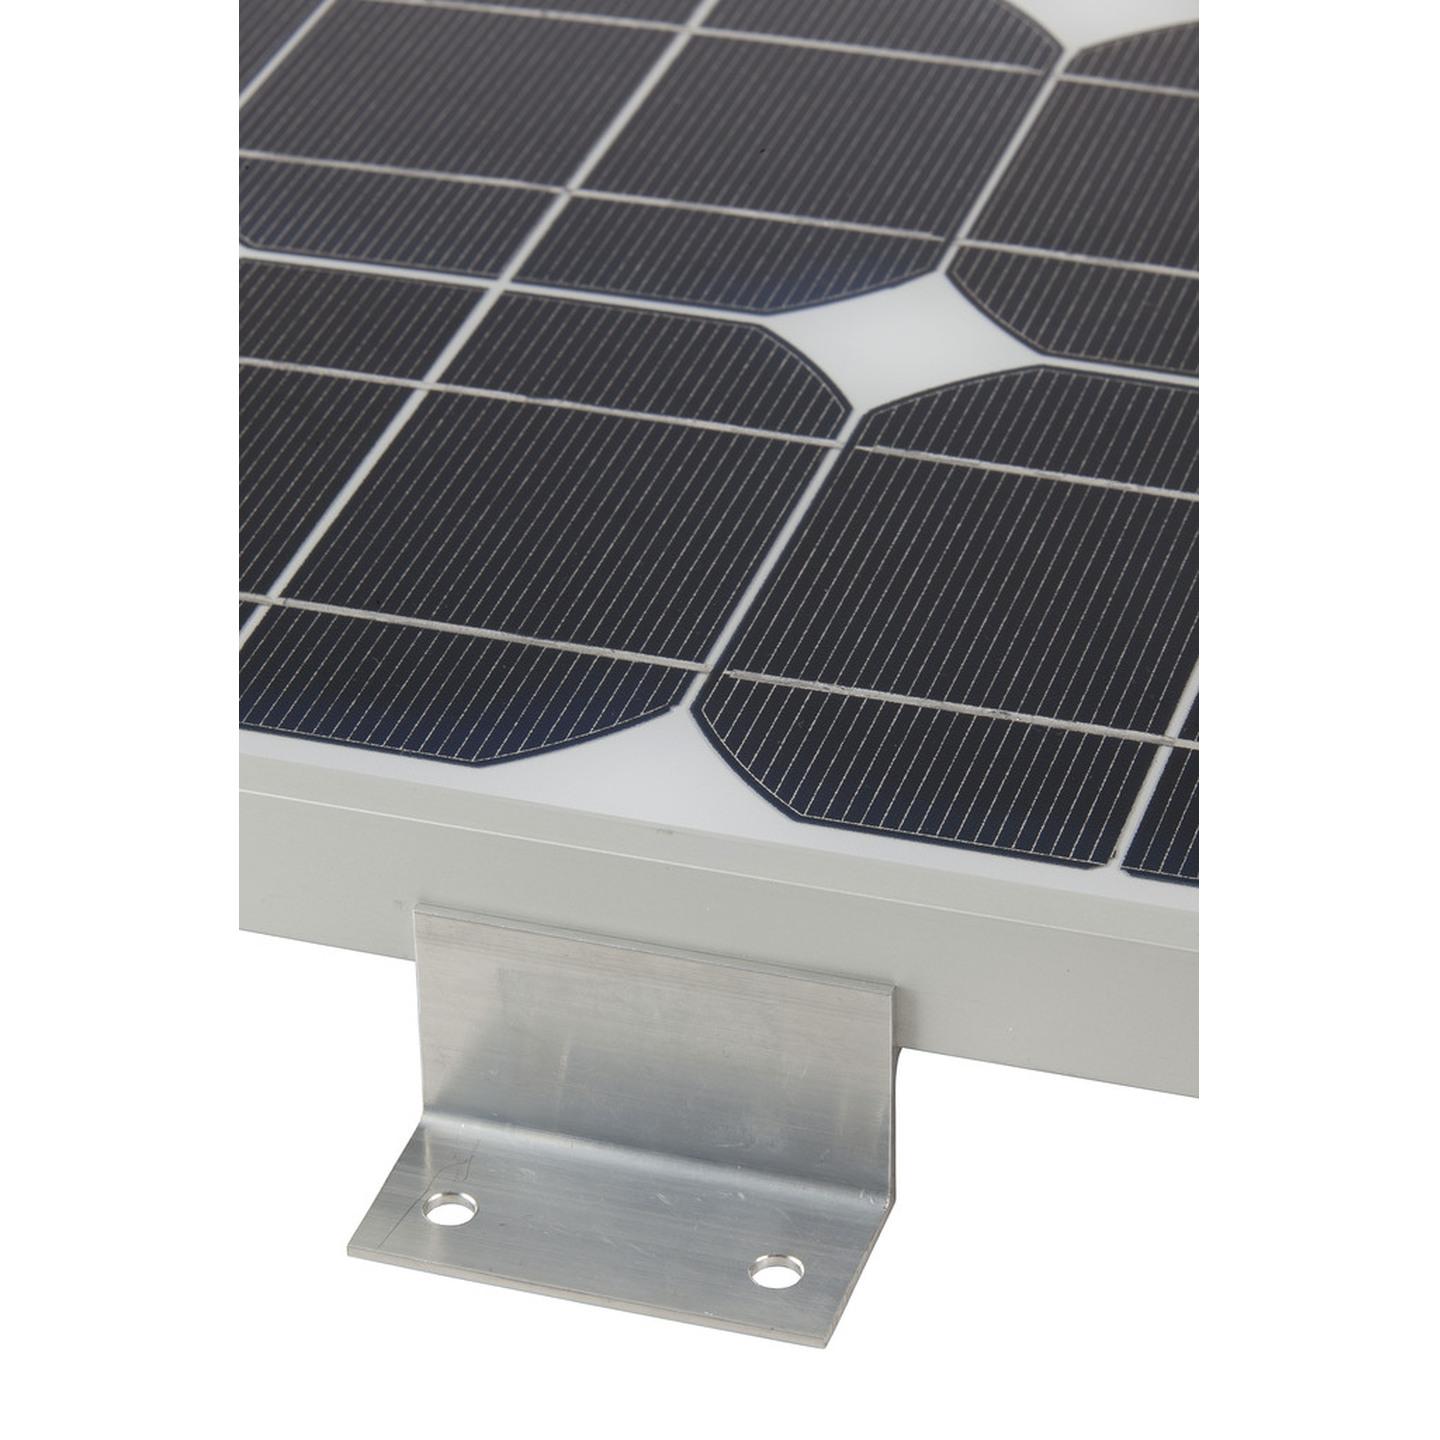 Universal Individual Solar Panel Mounting Bracket